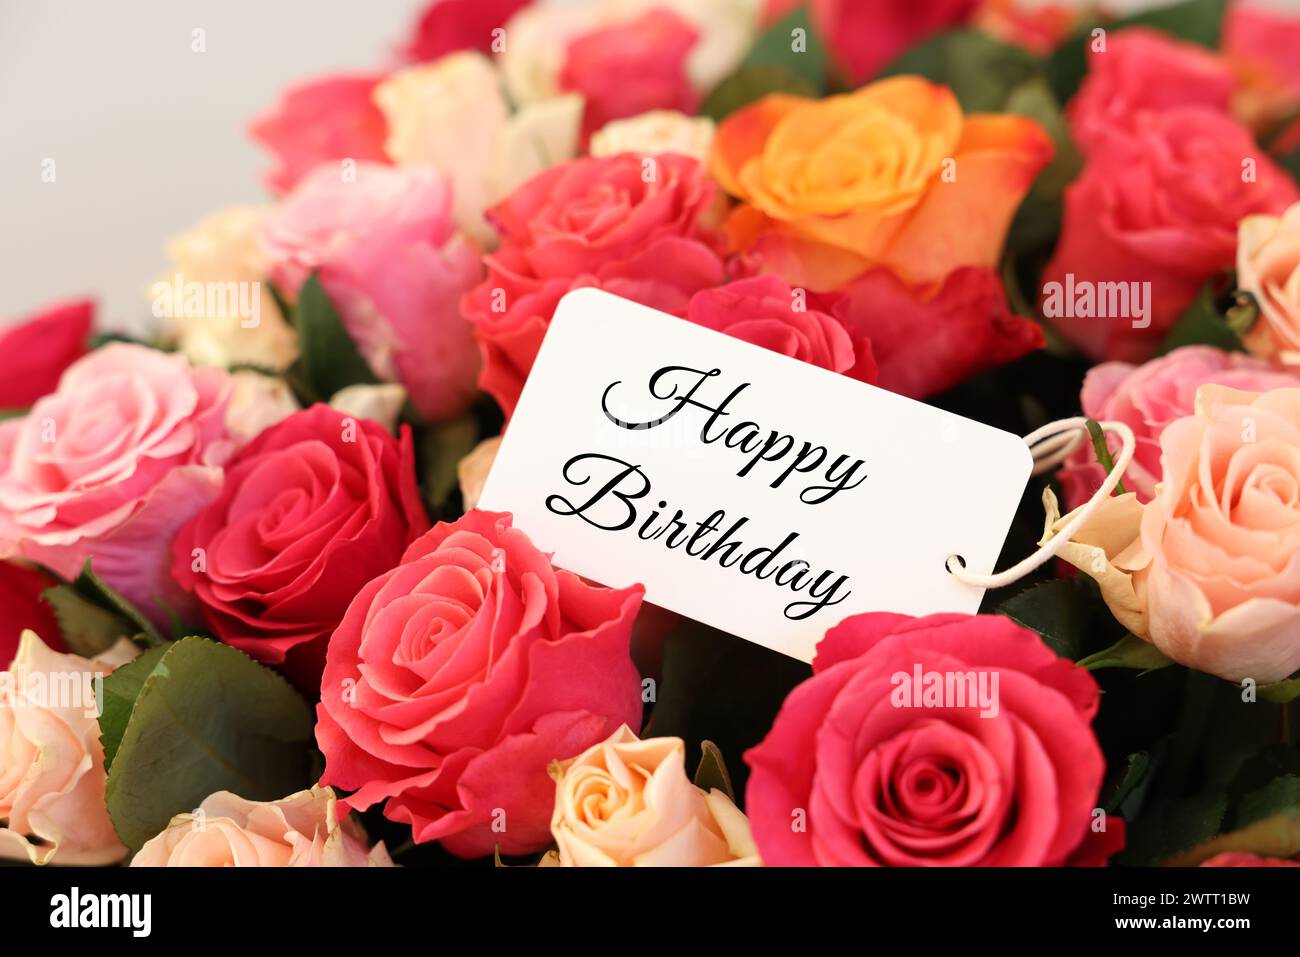 Bouquet di splendide rose con tessera Happy Birthday, primo piano Foto Stock